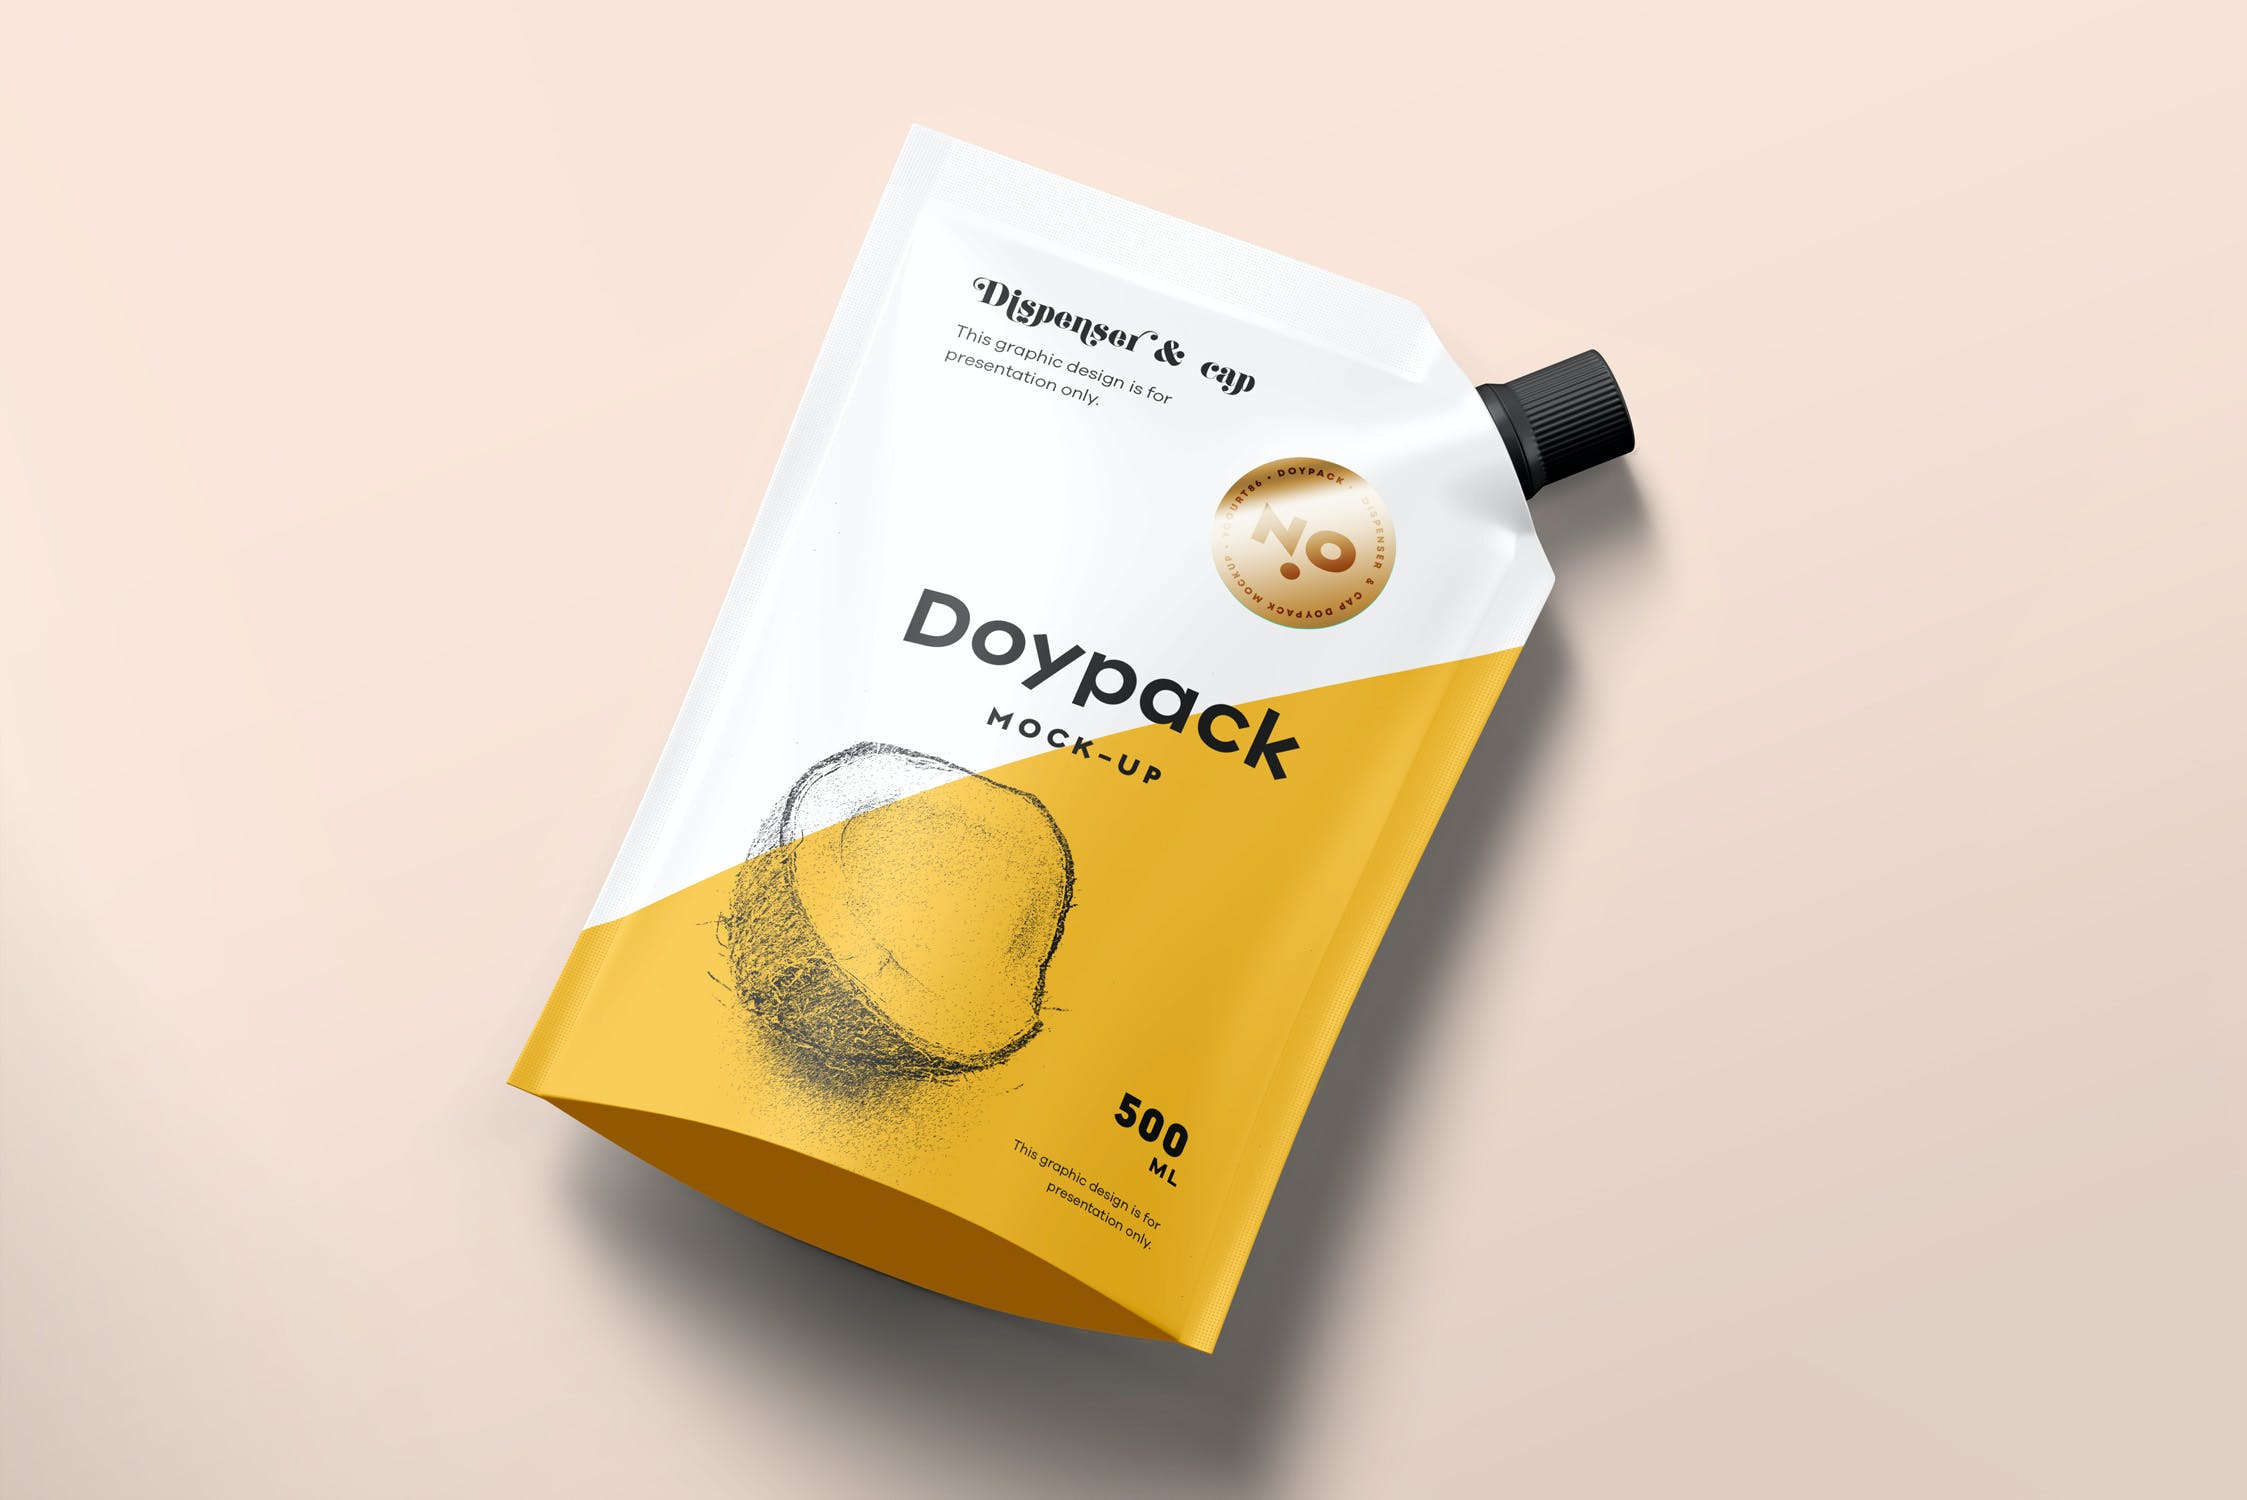 固体饮料包装袋食品包装袋模板样机Doypack Mock-up 5  UKZS3E5插图3